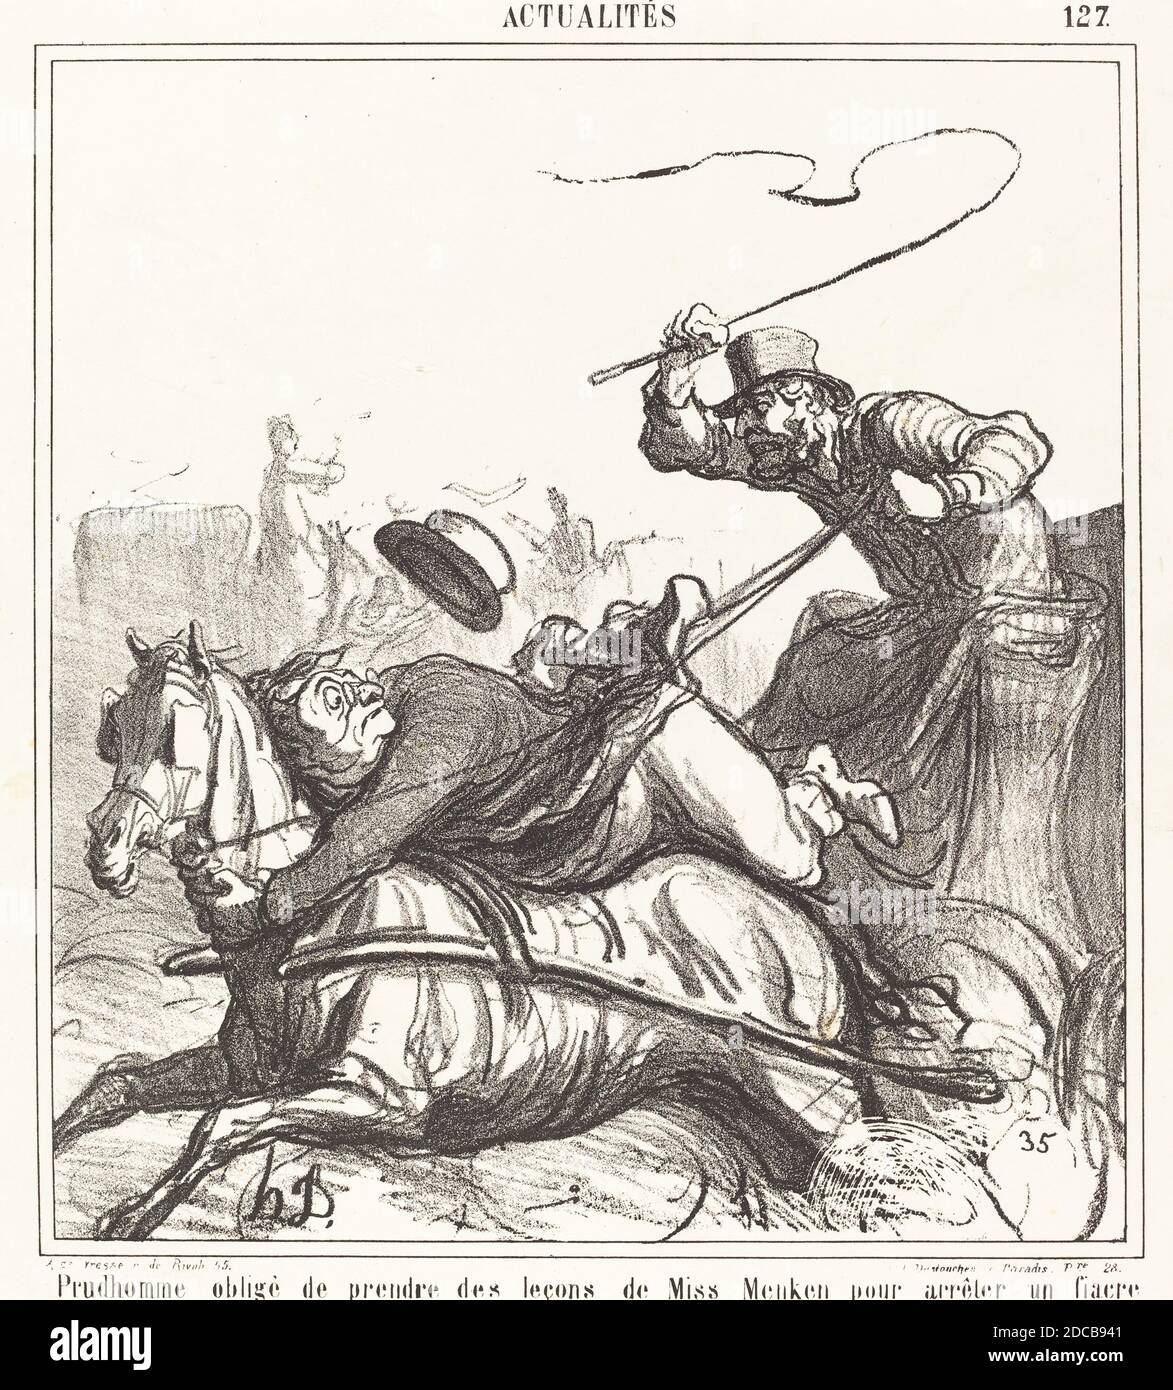 Honoré Daumier, (artista), francese, 1808 - 1879, Prudhomme obligé de prendre des leçons..., Actualités, (serie), 1867, litografia Foto Stock